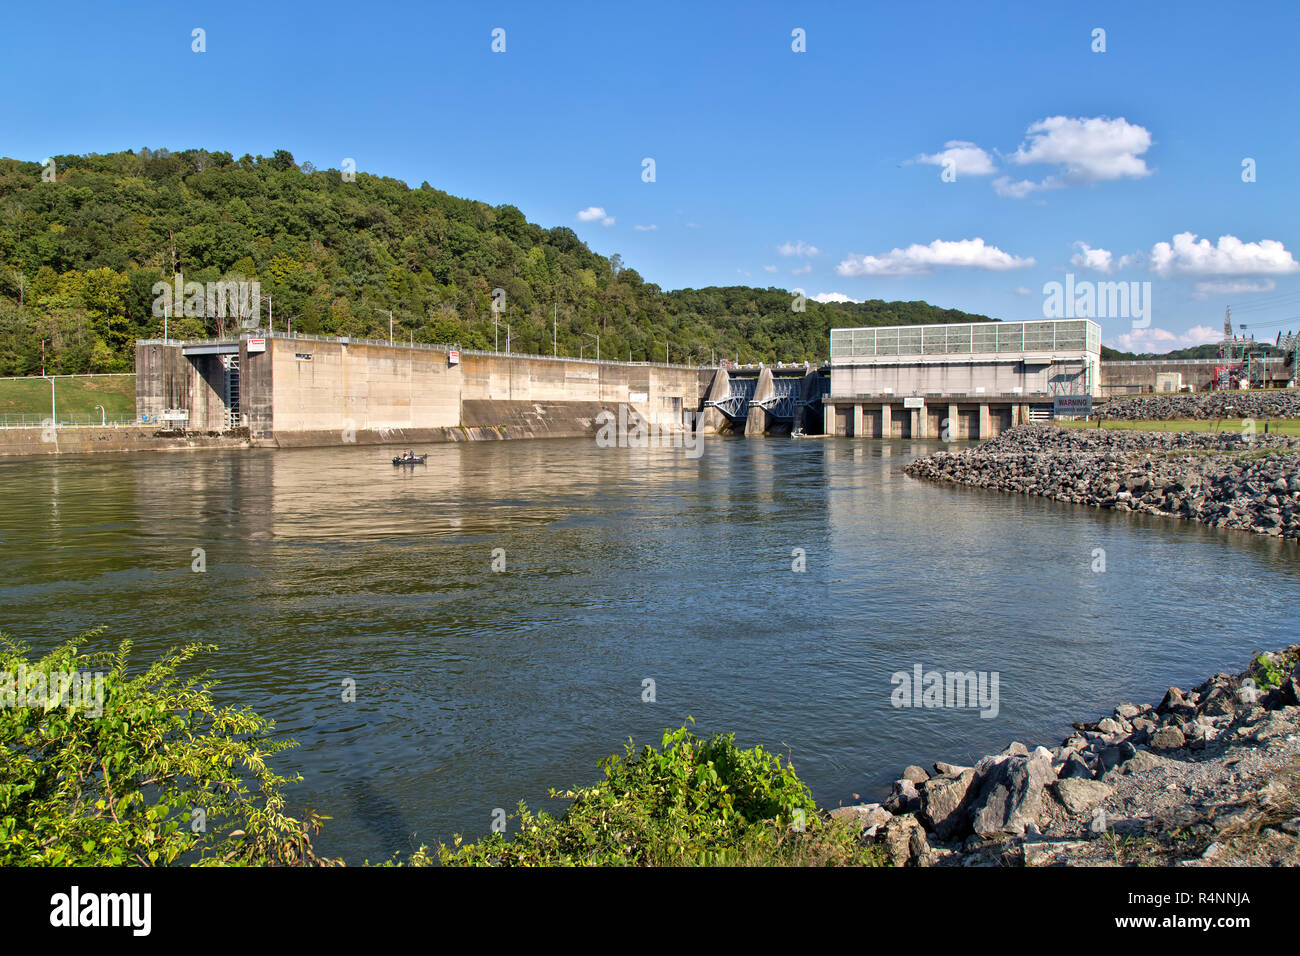 Barrage hydroélectrique et centrale électrique de Melton Hill. Le terrain de jeux de Melton Hill, du U.S. Army corps of Engineers, est un réservoir de rivière. Banque D'Images